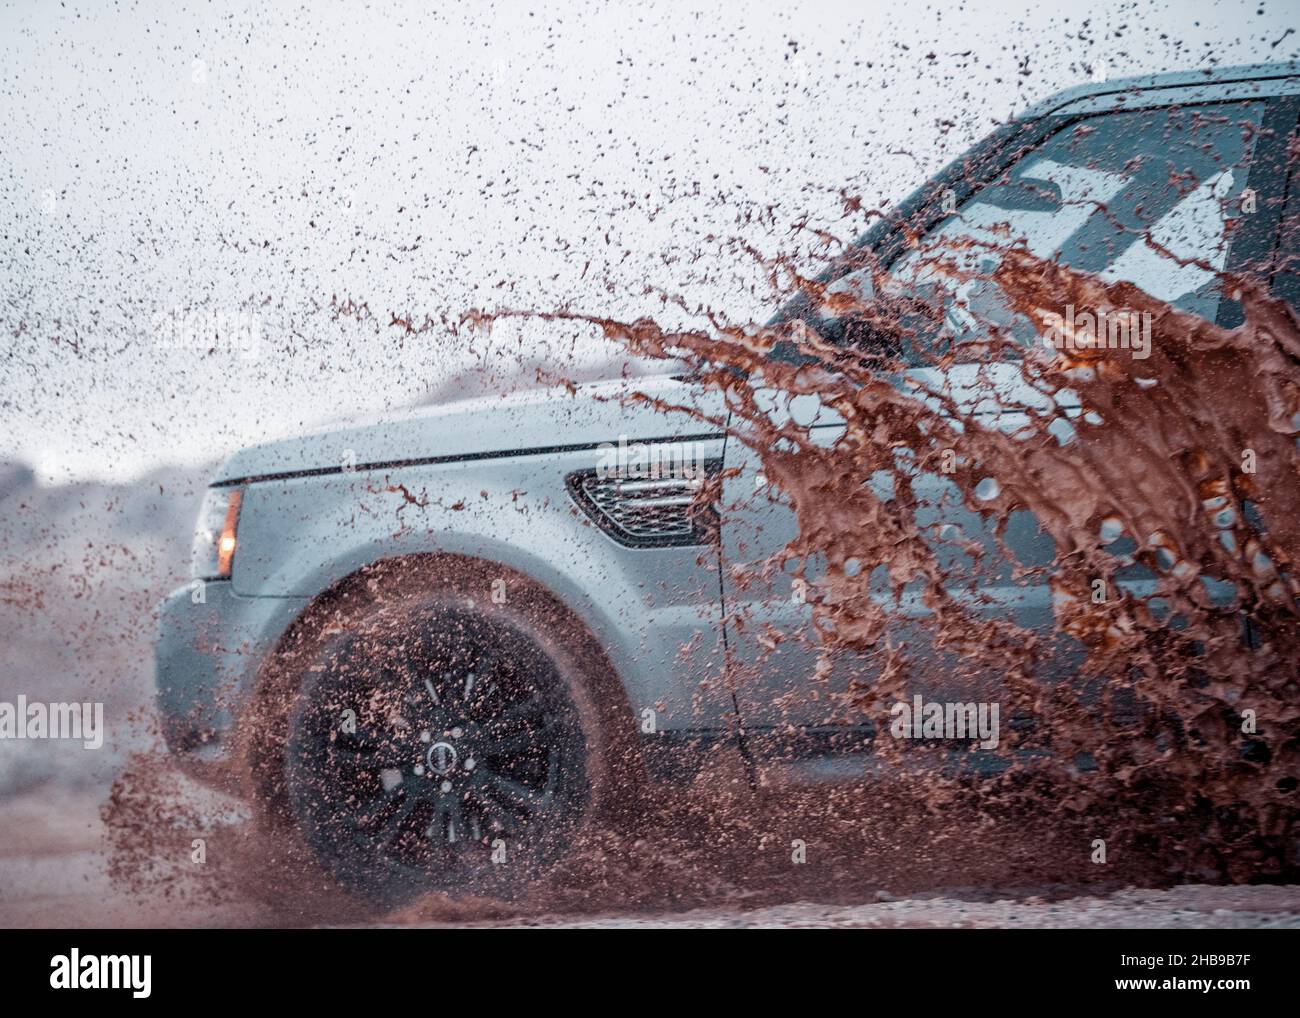 Range Rover driving through a puddle, splashing mud Stock Photo